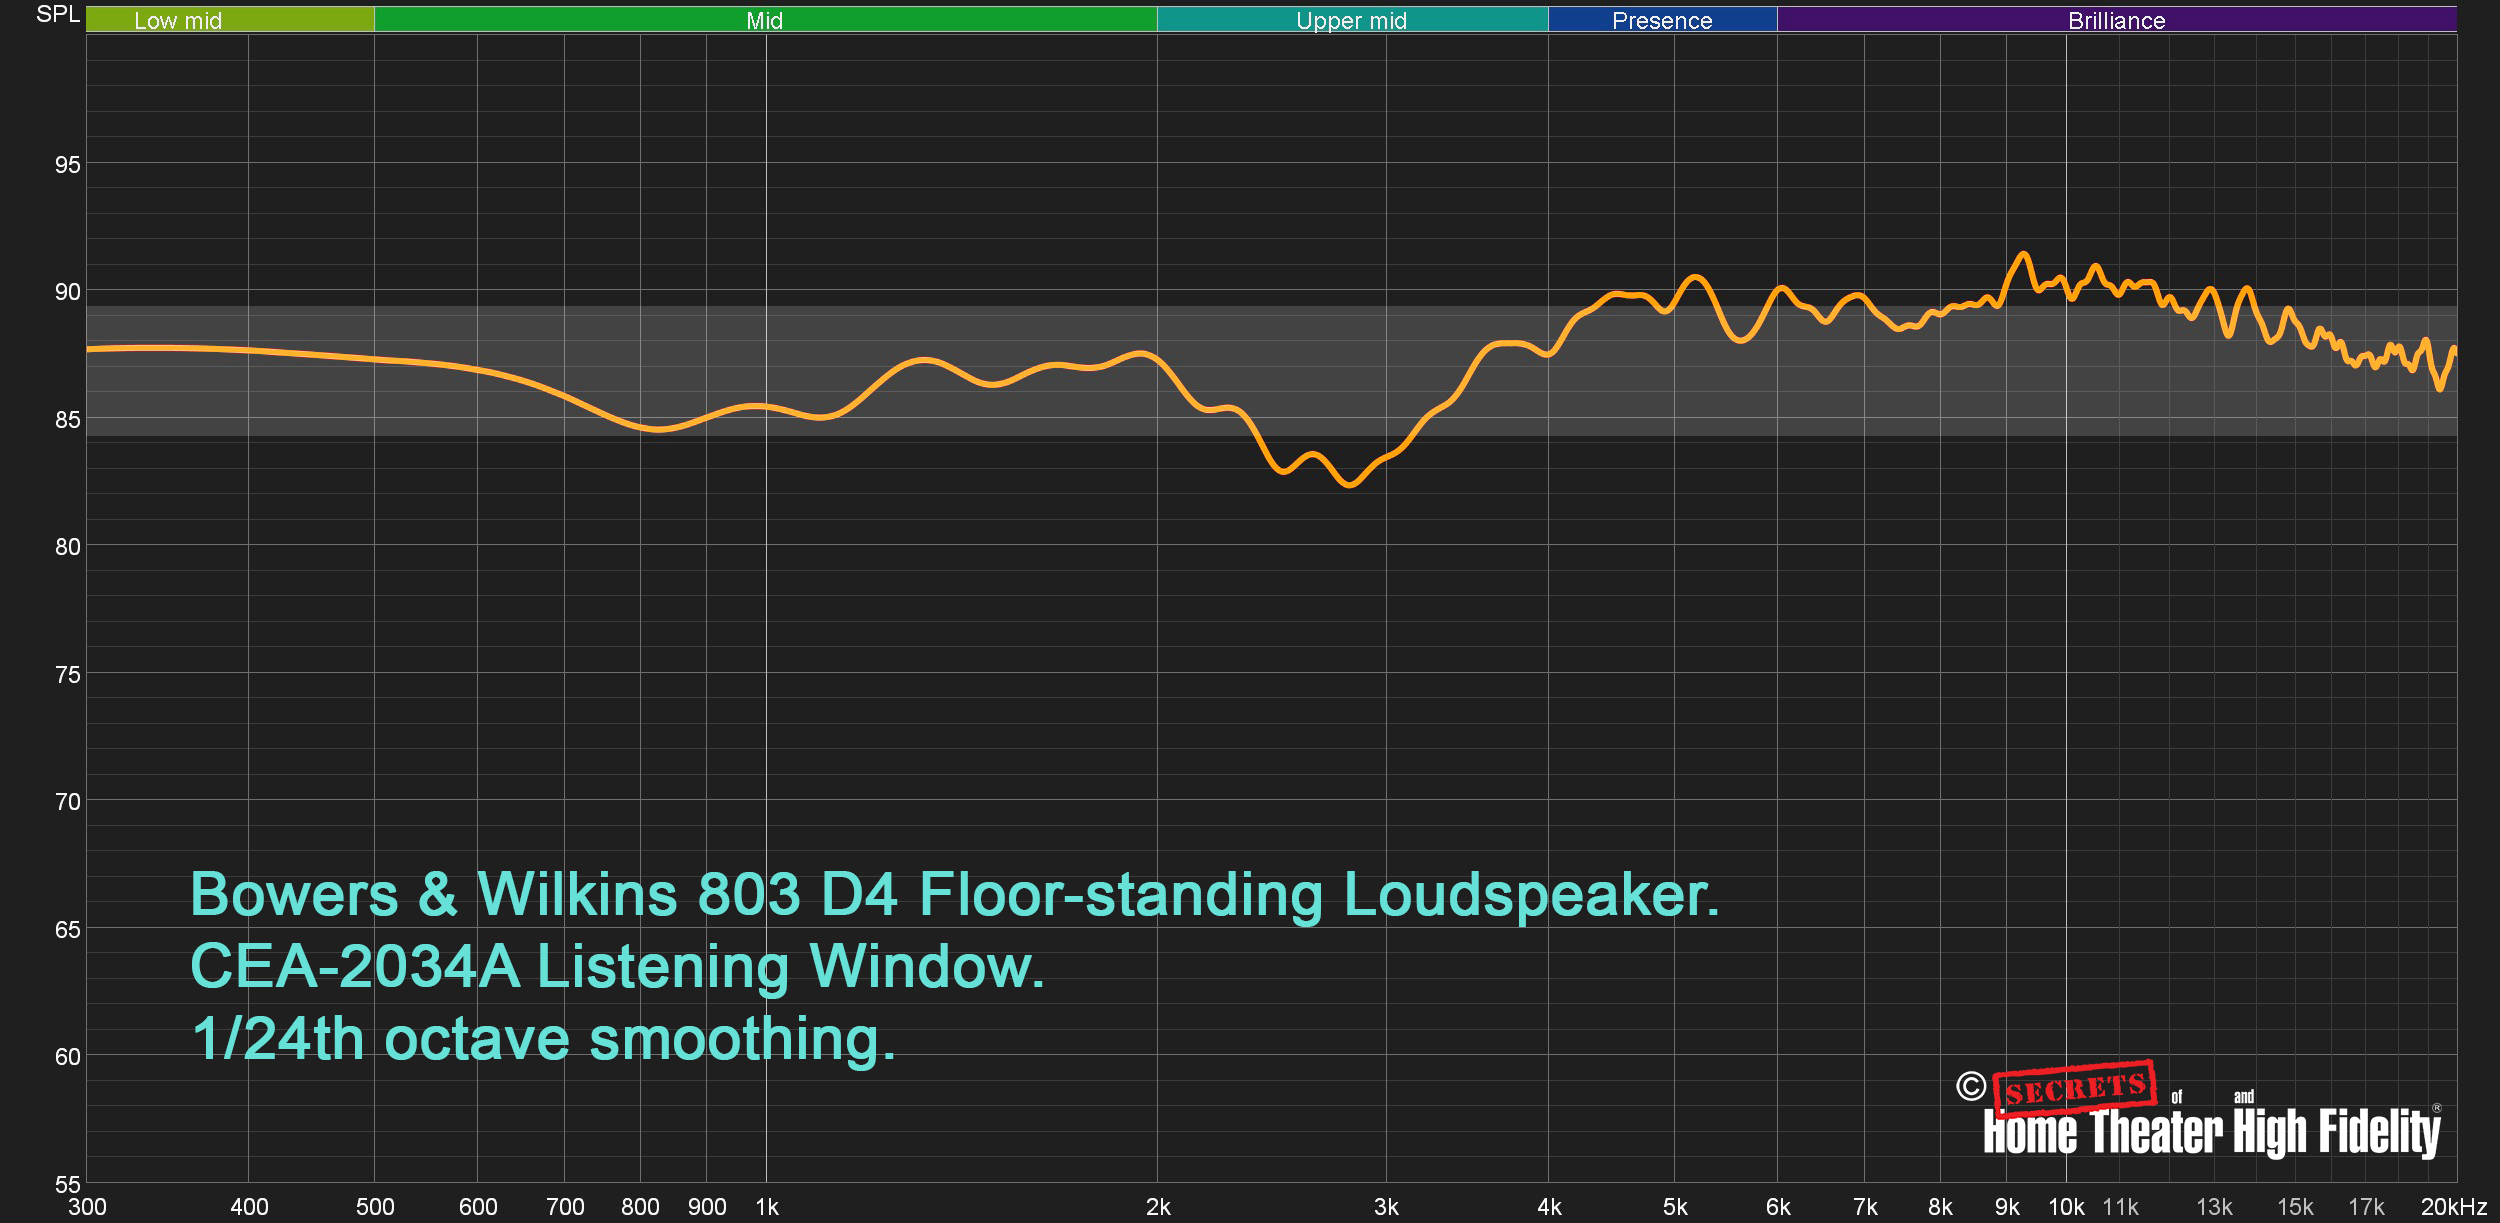 Bowers & Wilkins 803 D4 Loudspeakers Average In Room Response Listening Window